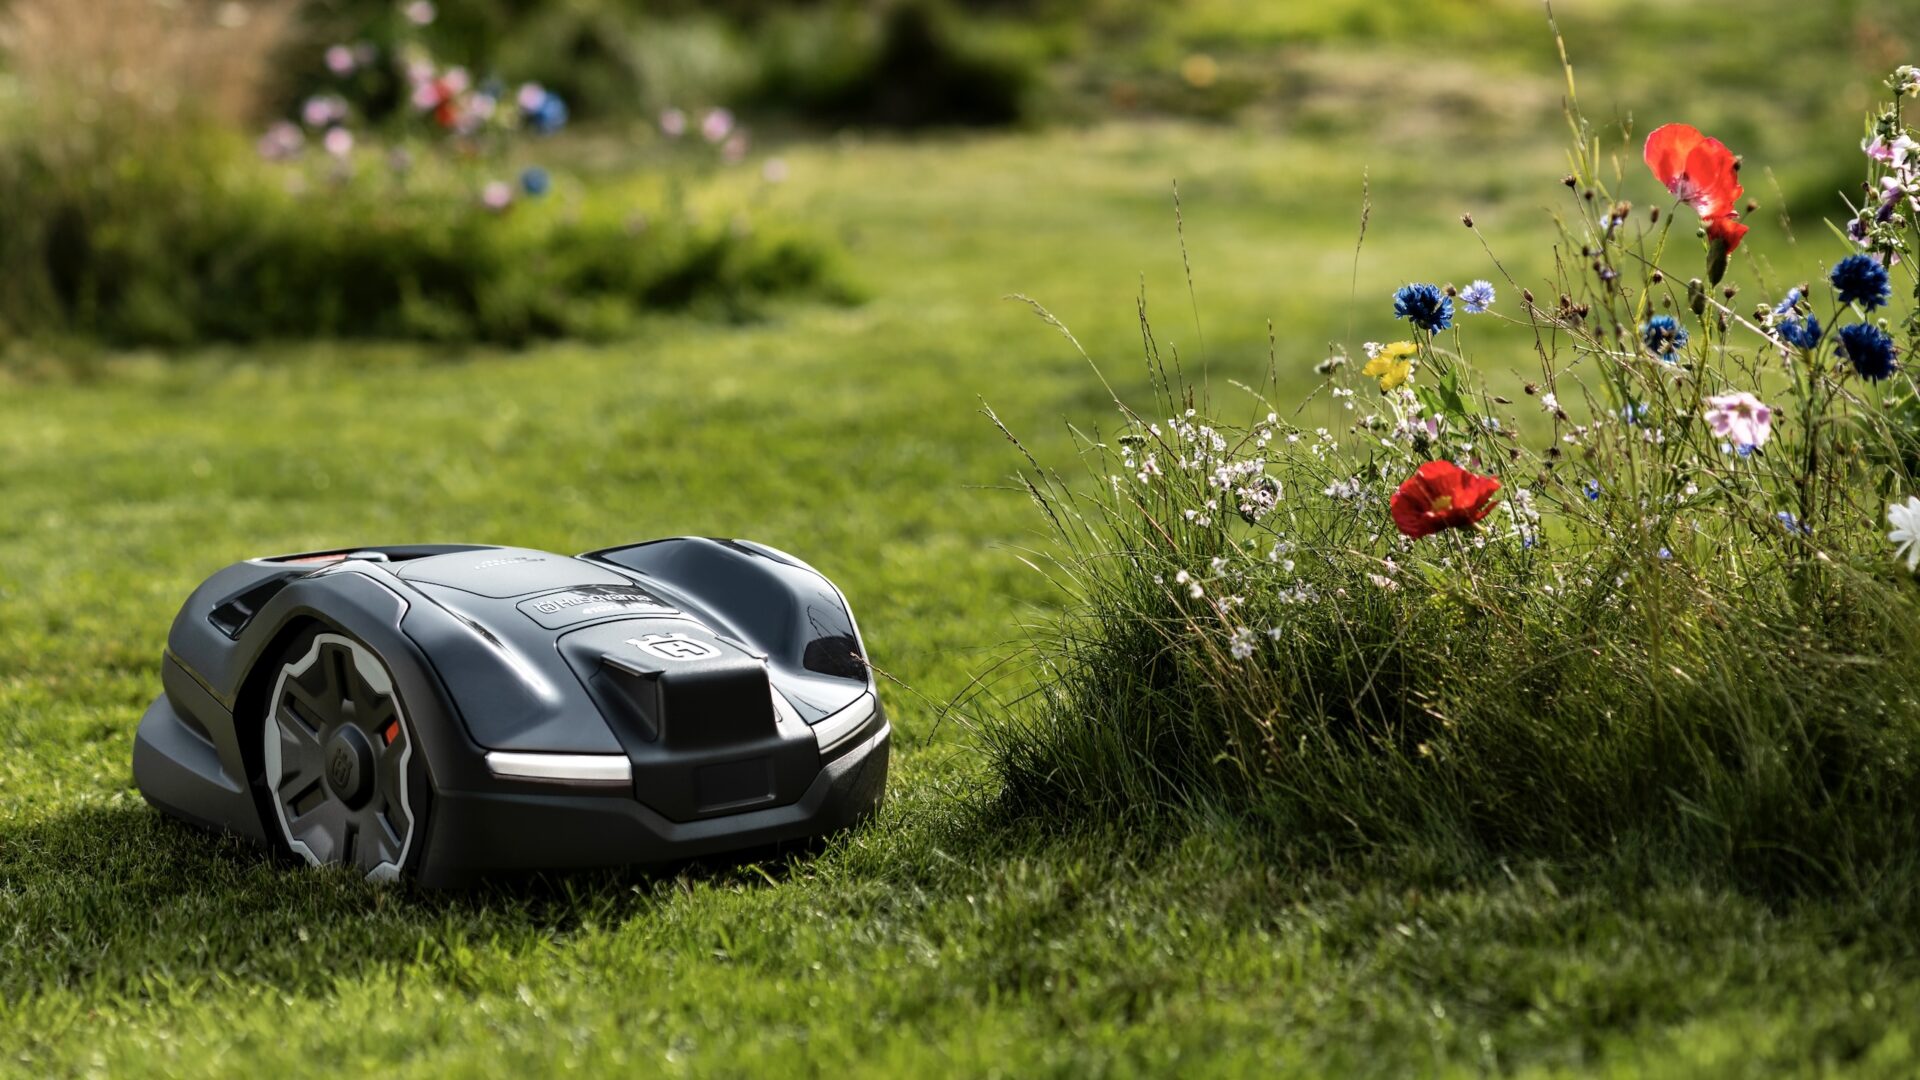 Husqvarna Automower Nera robotgräsklippare för trädgårdar